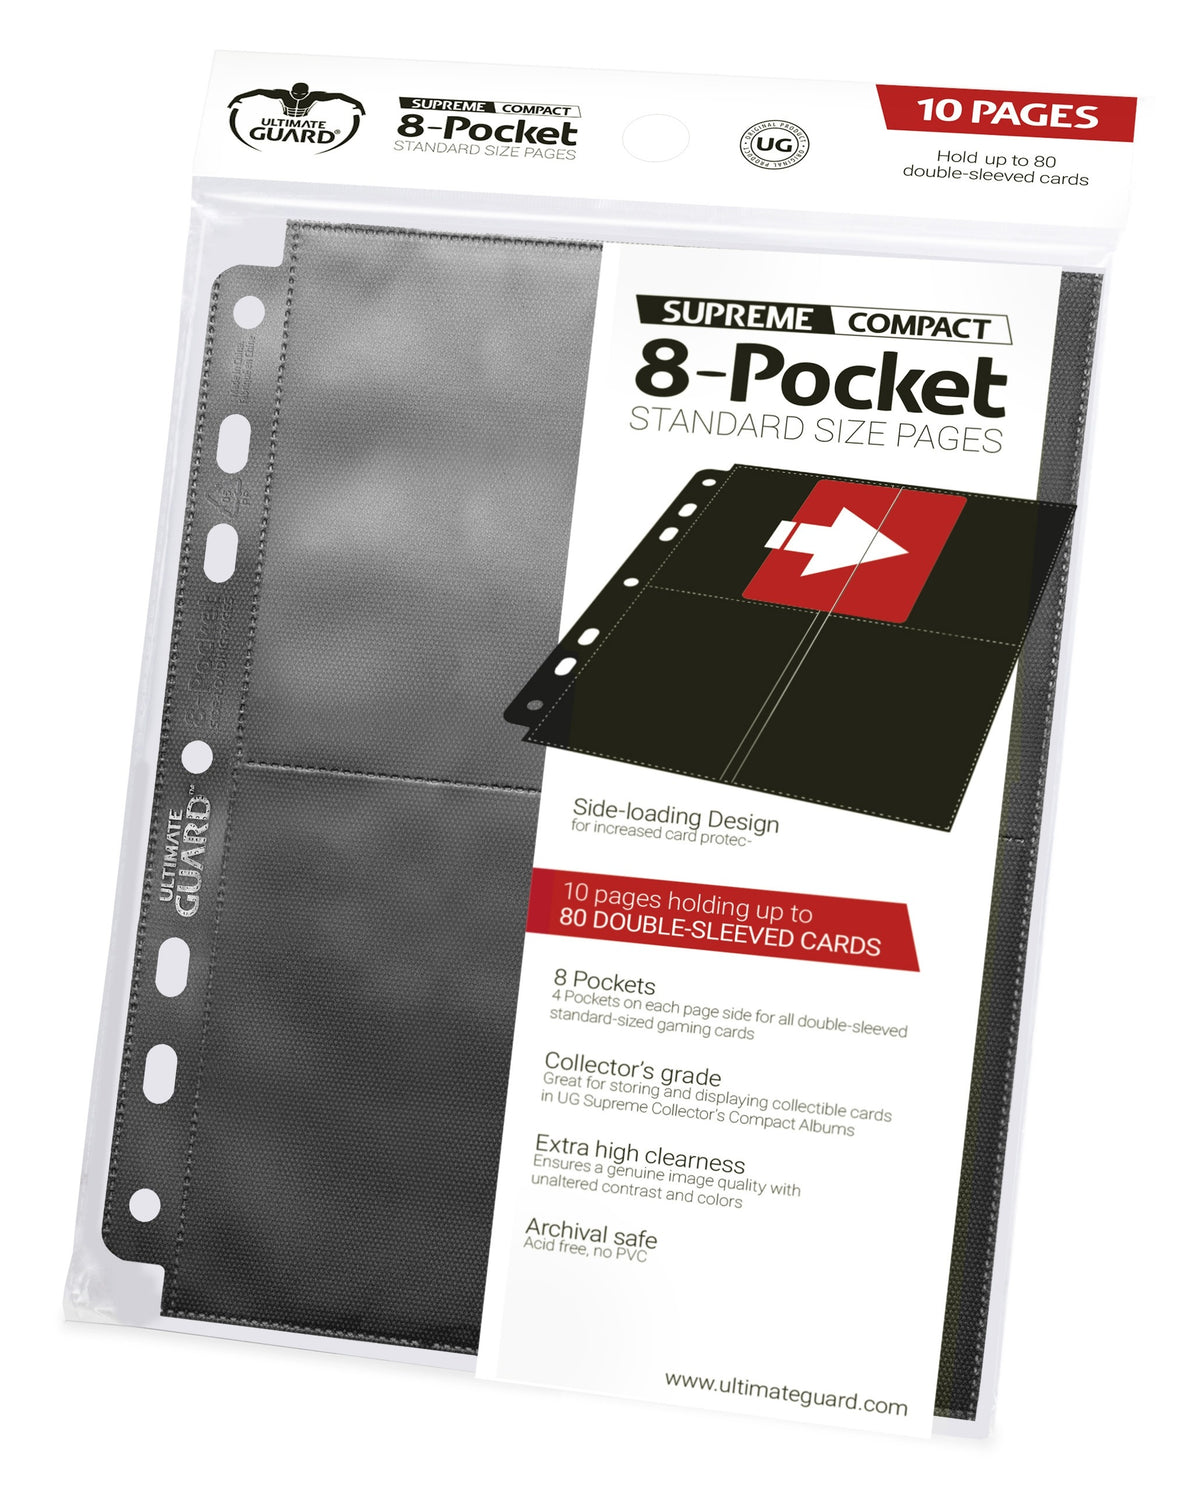 Ultimate Guard 8 Pocket Standard Pages Black